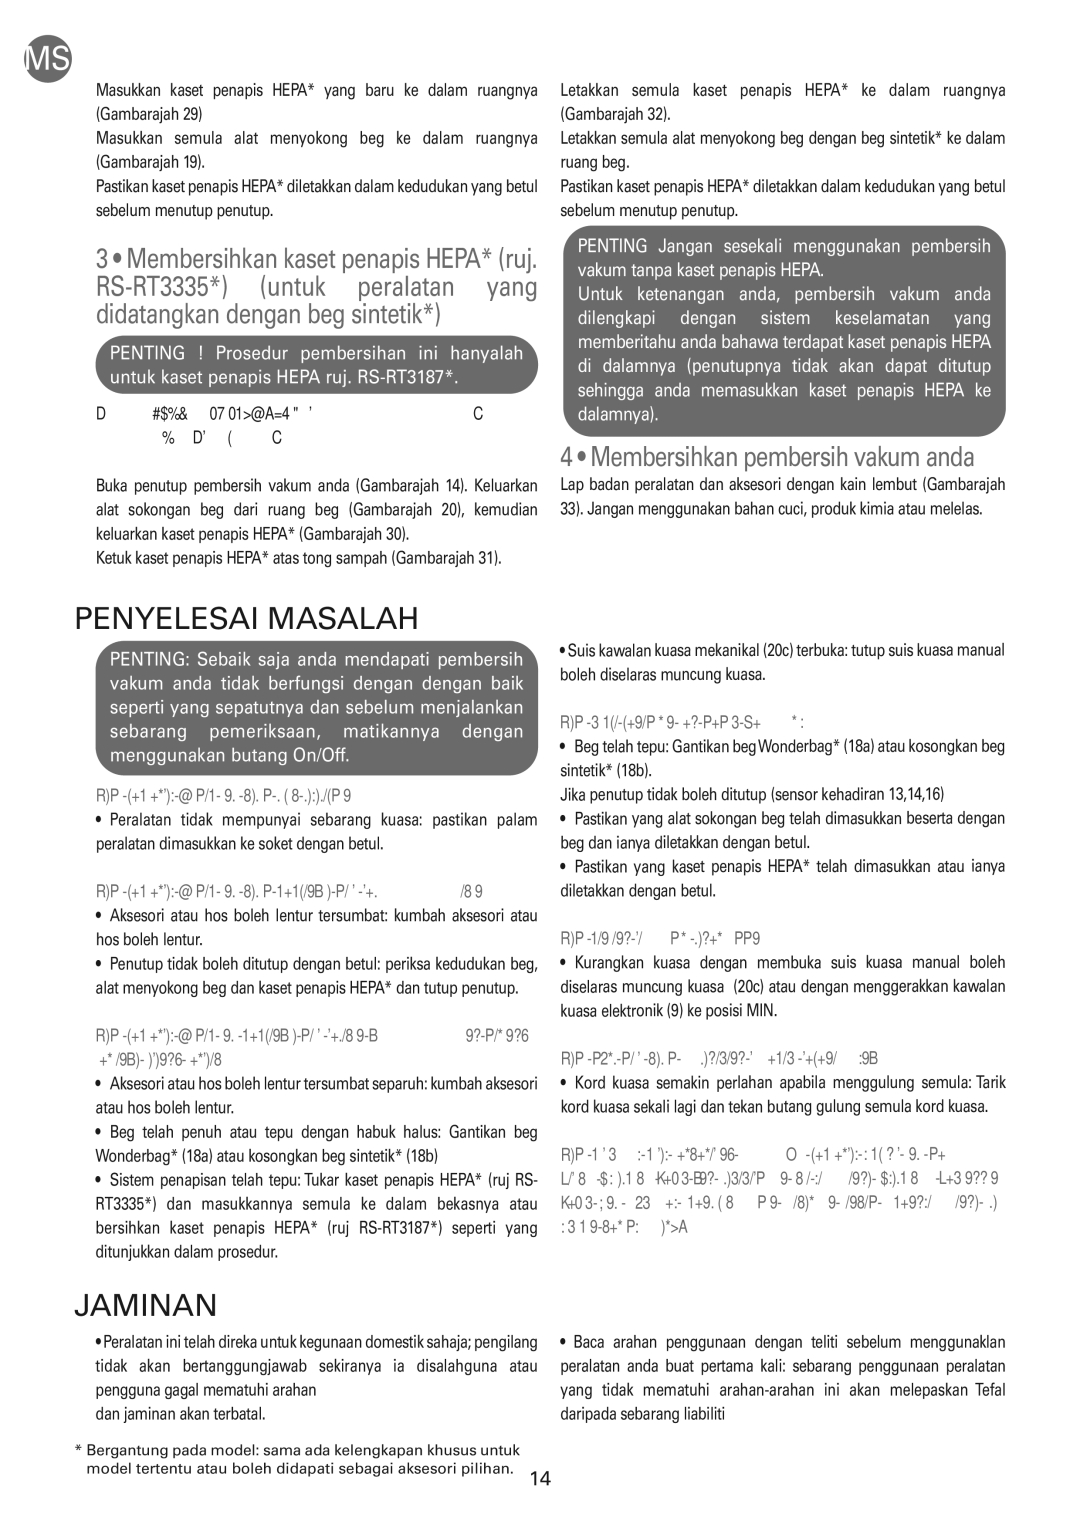 Tefal TW583388 manual Penyelesai Masalah, Jaminan 